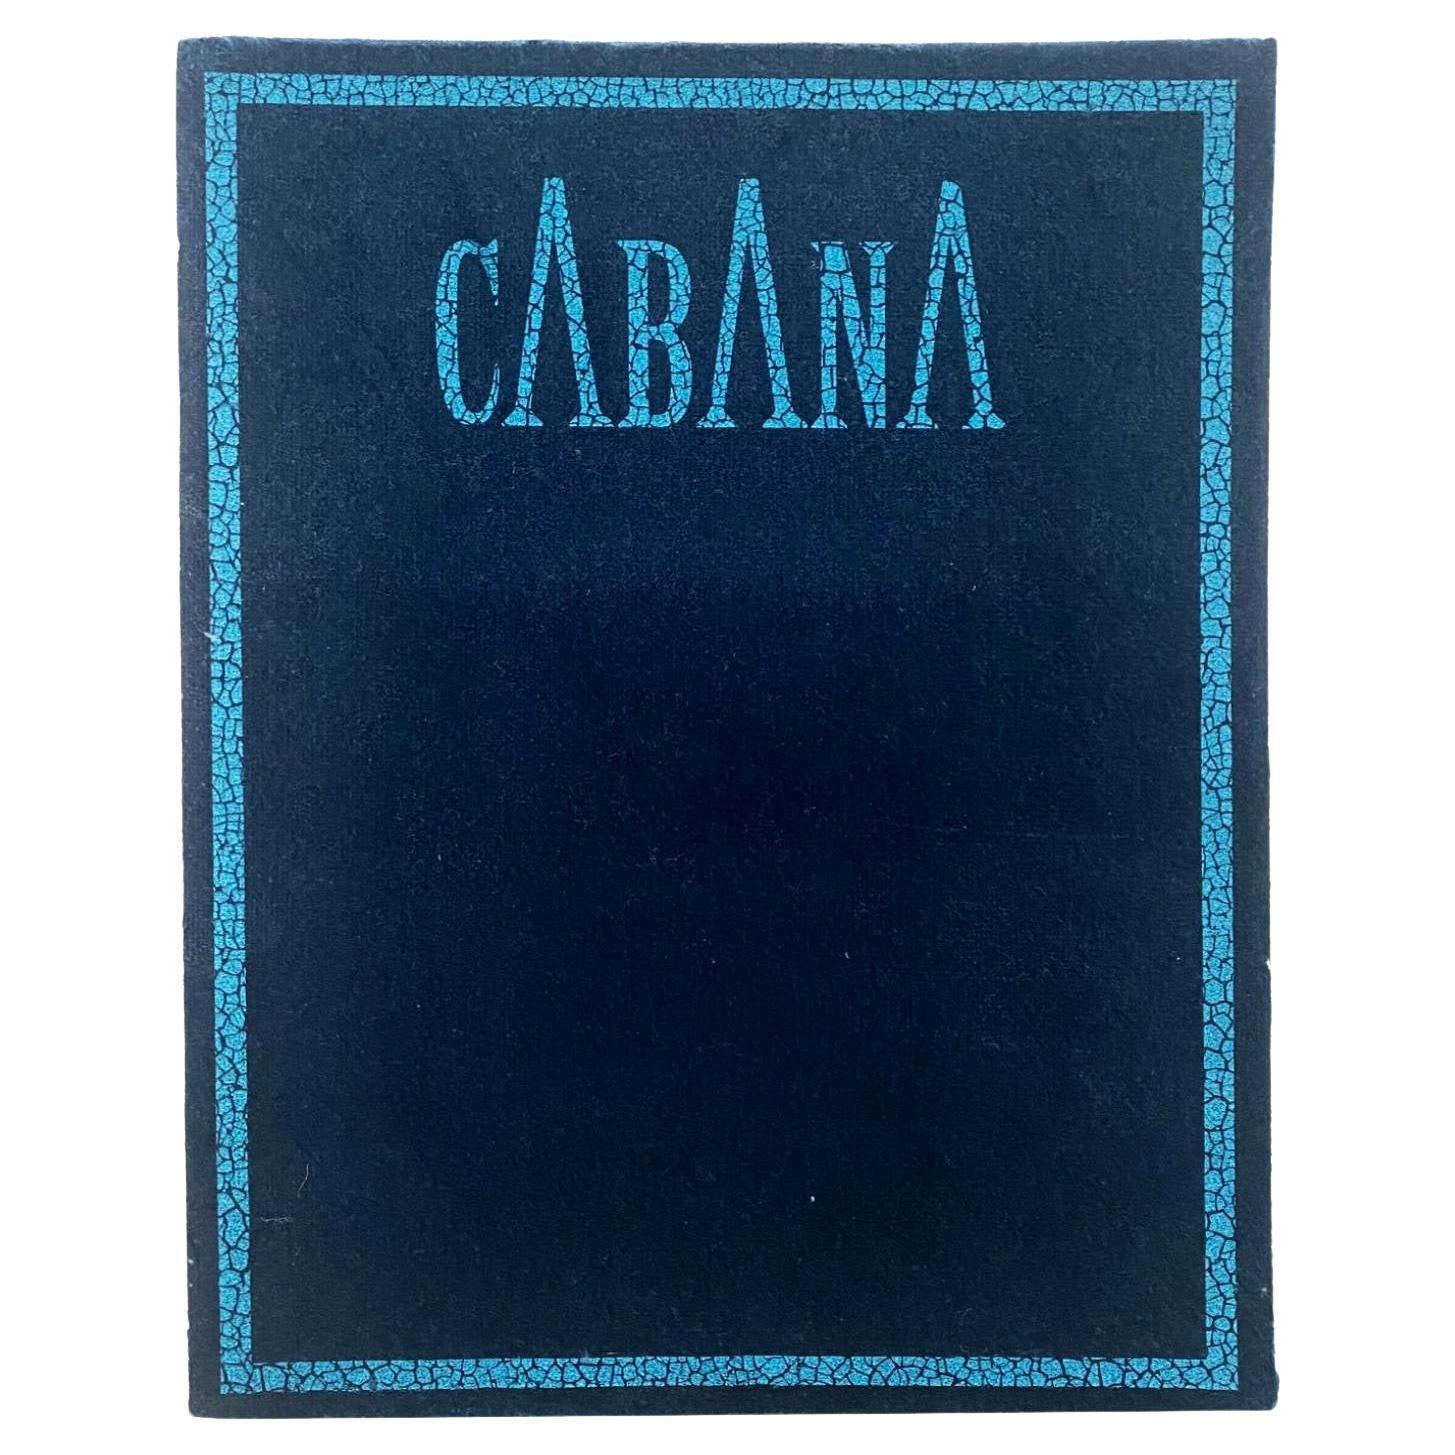 2021 - Magazine Cabana Issue 15 